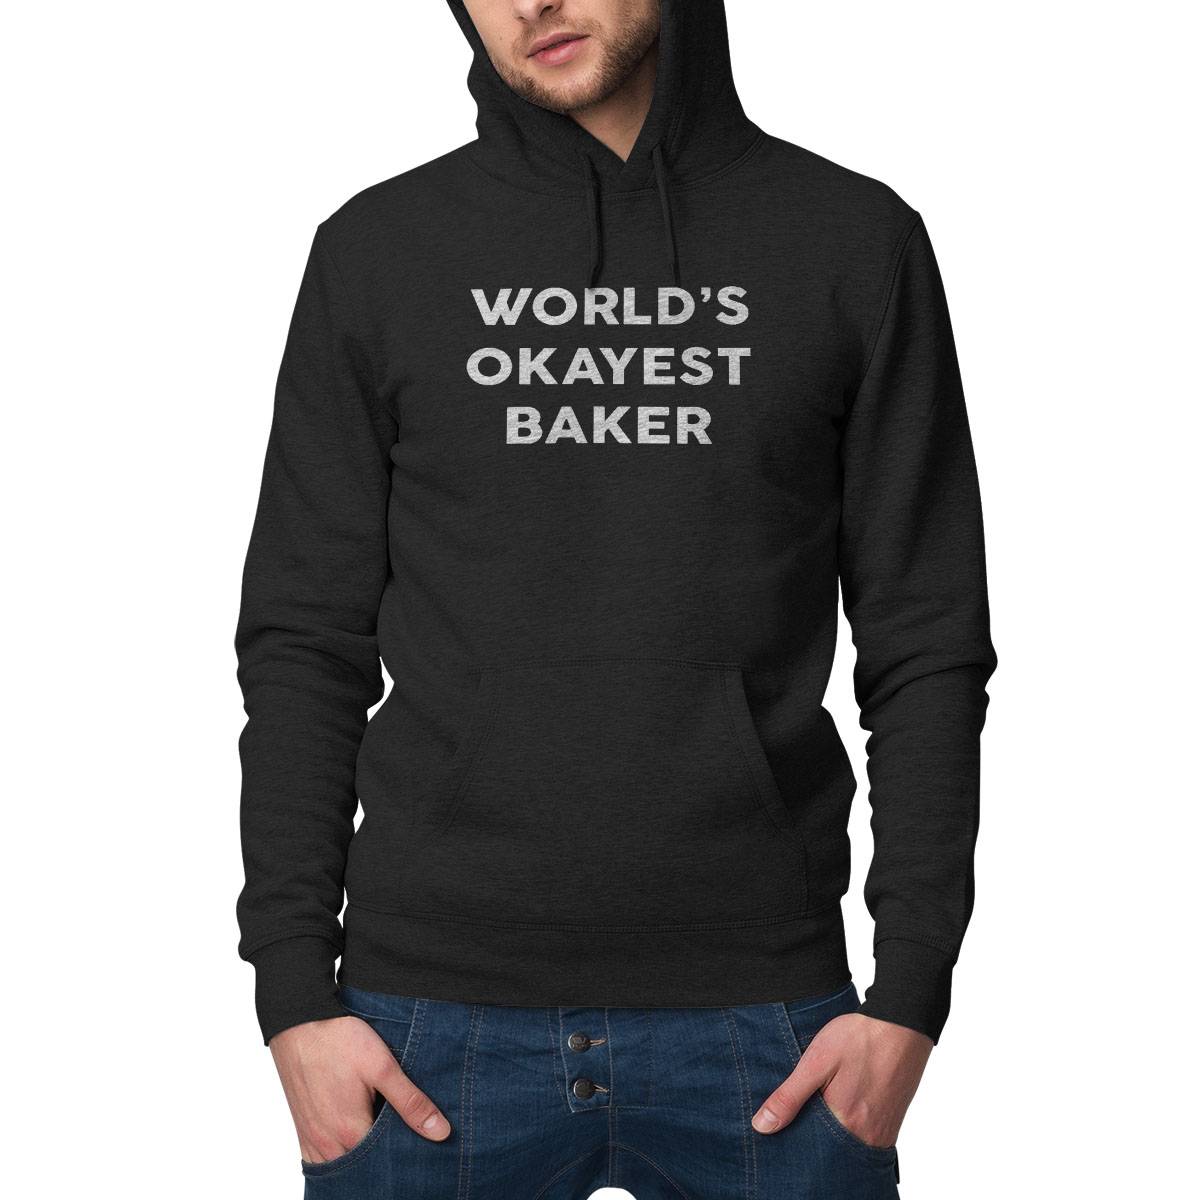 World'S Okayest Baker T-Shirt For Bakers Shirt